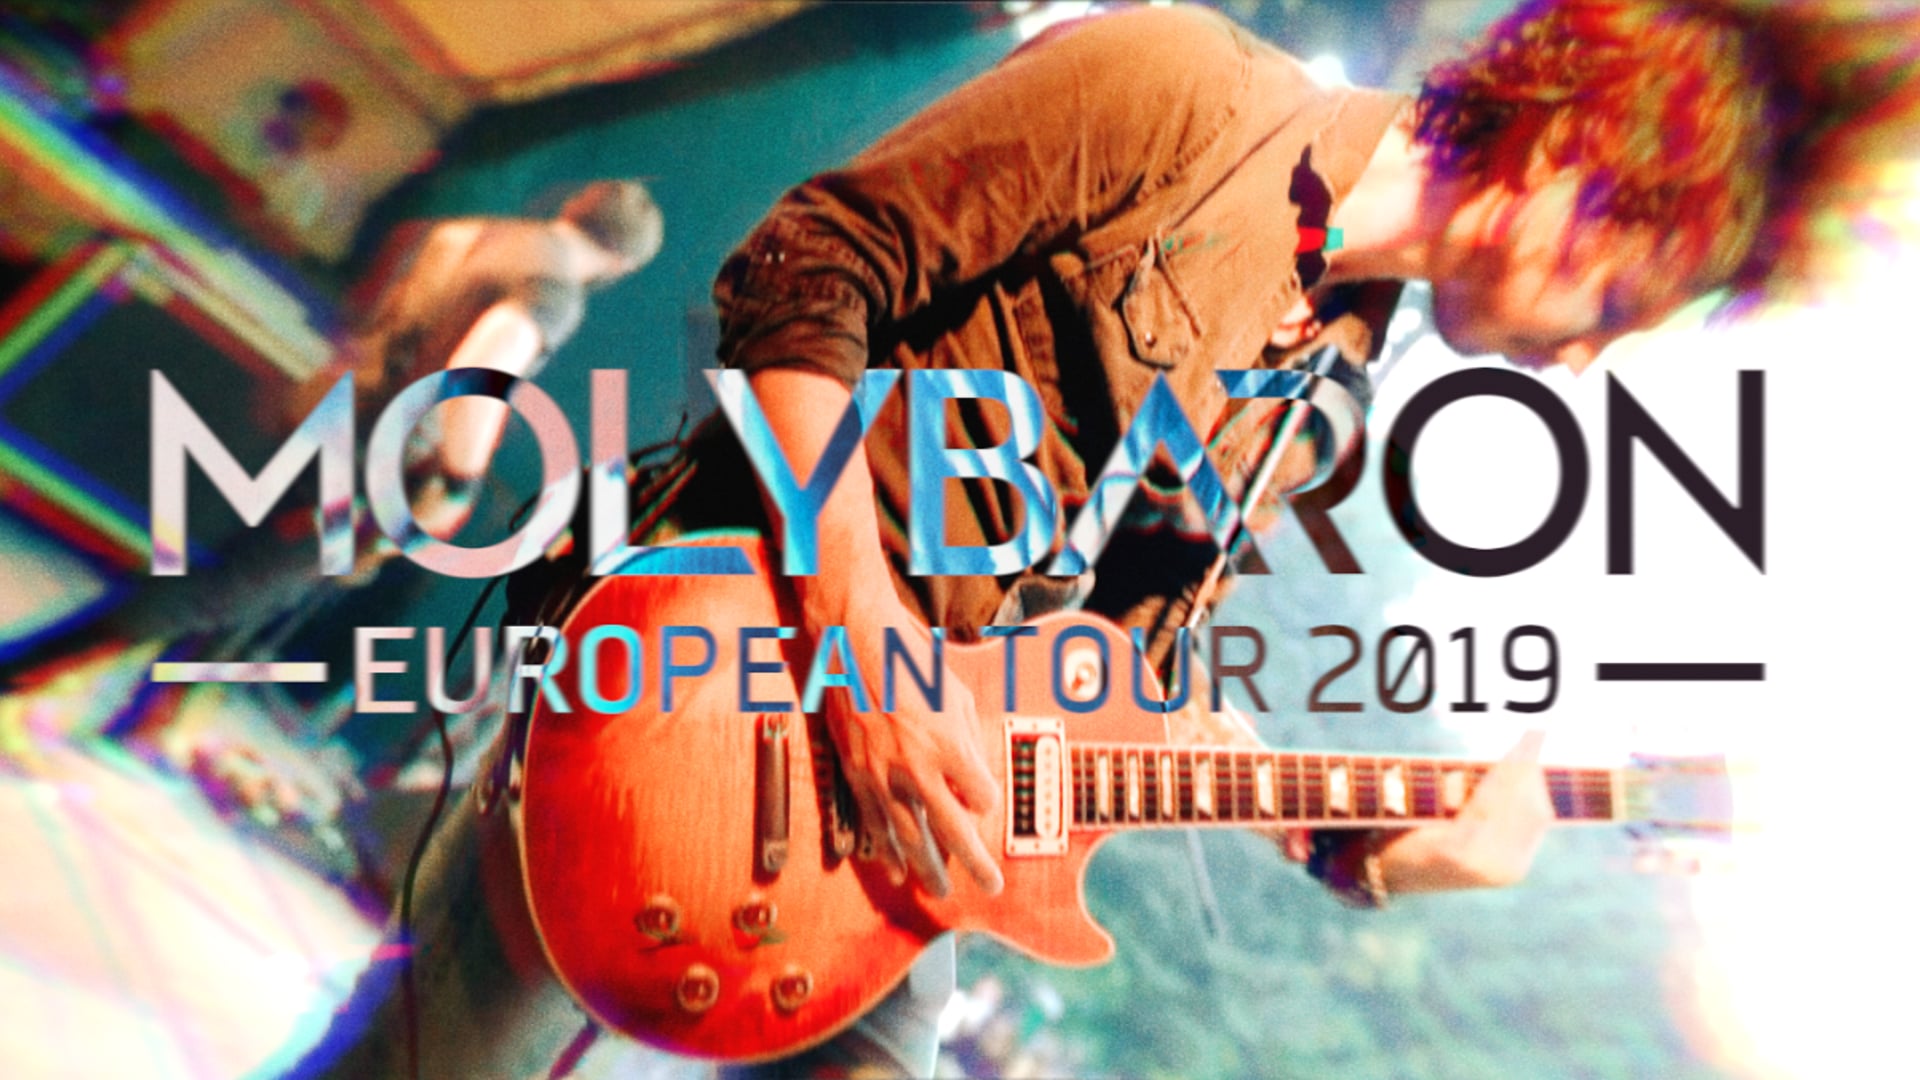 MOLYBARON / European Tour 2019 announcement